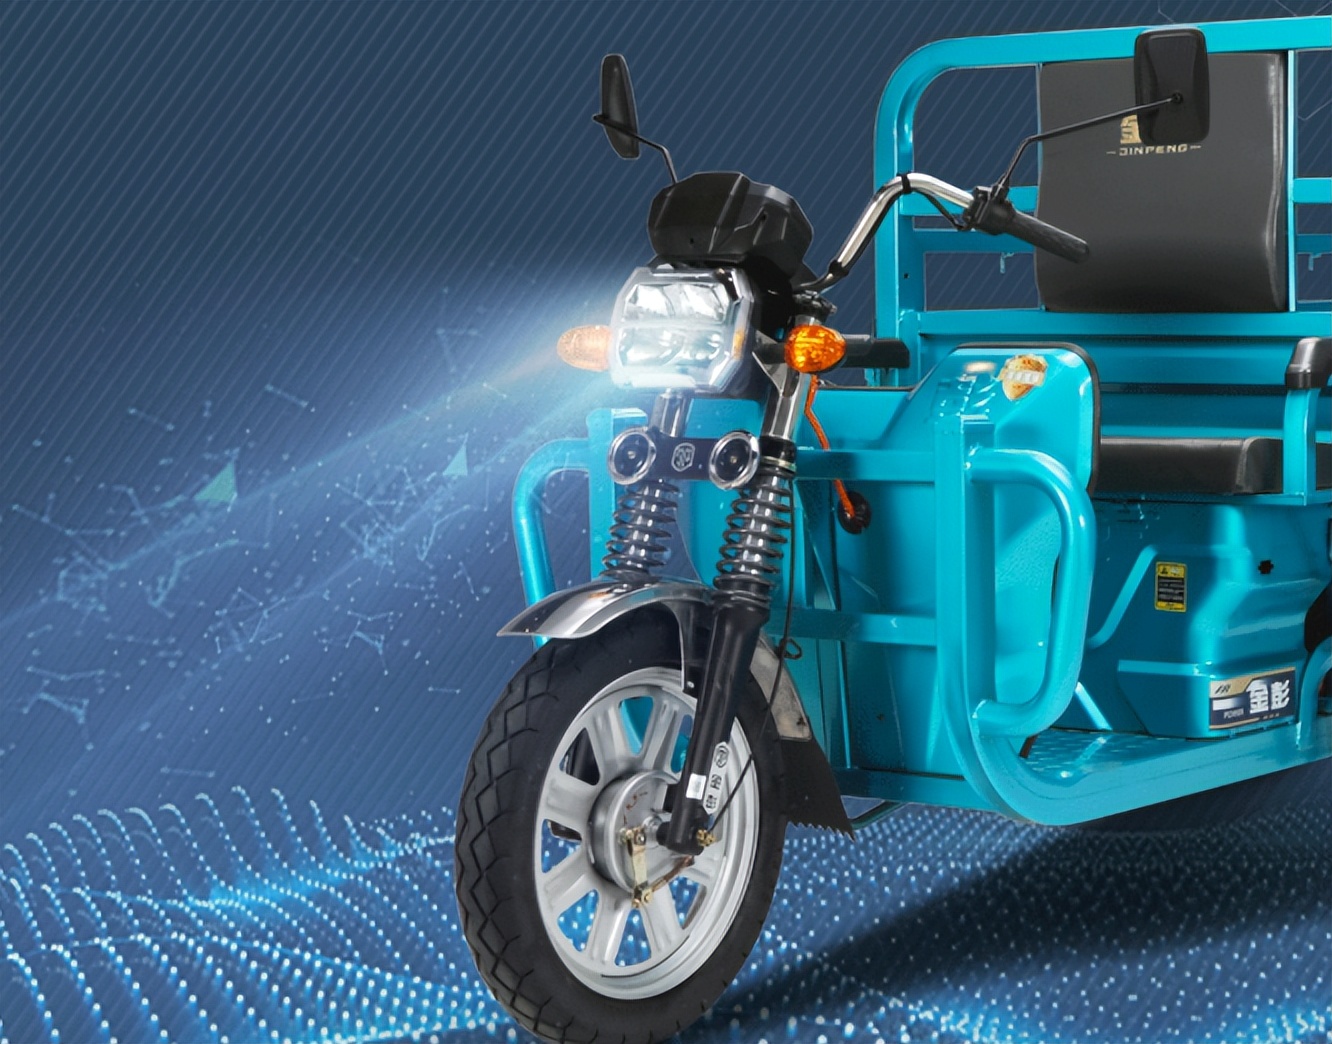 金彭推出一款轻型电动三轮车,造型硬朗,扎实耐用,续航120公里